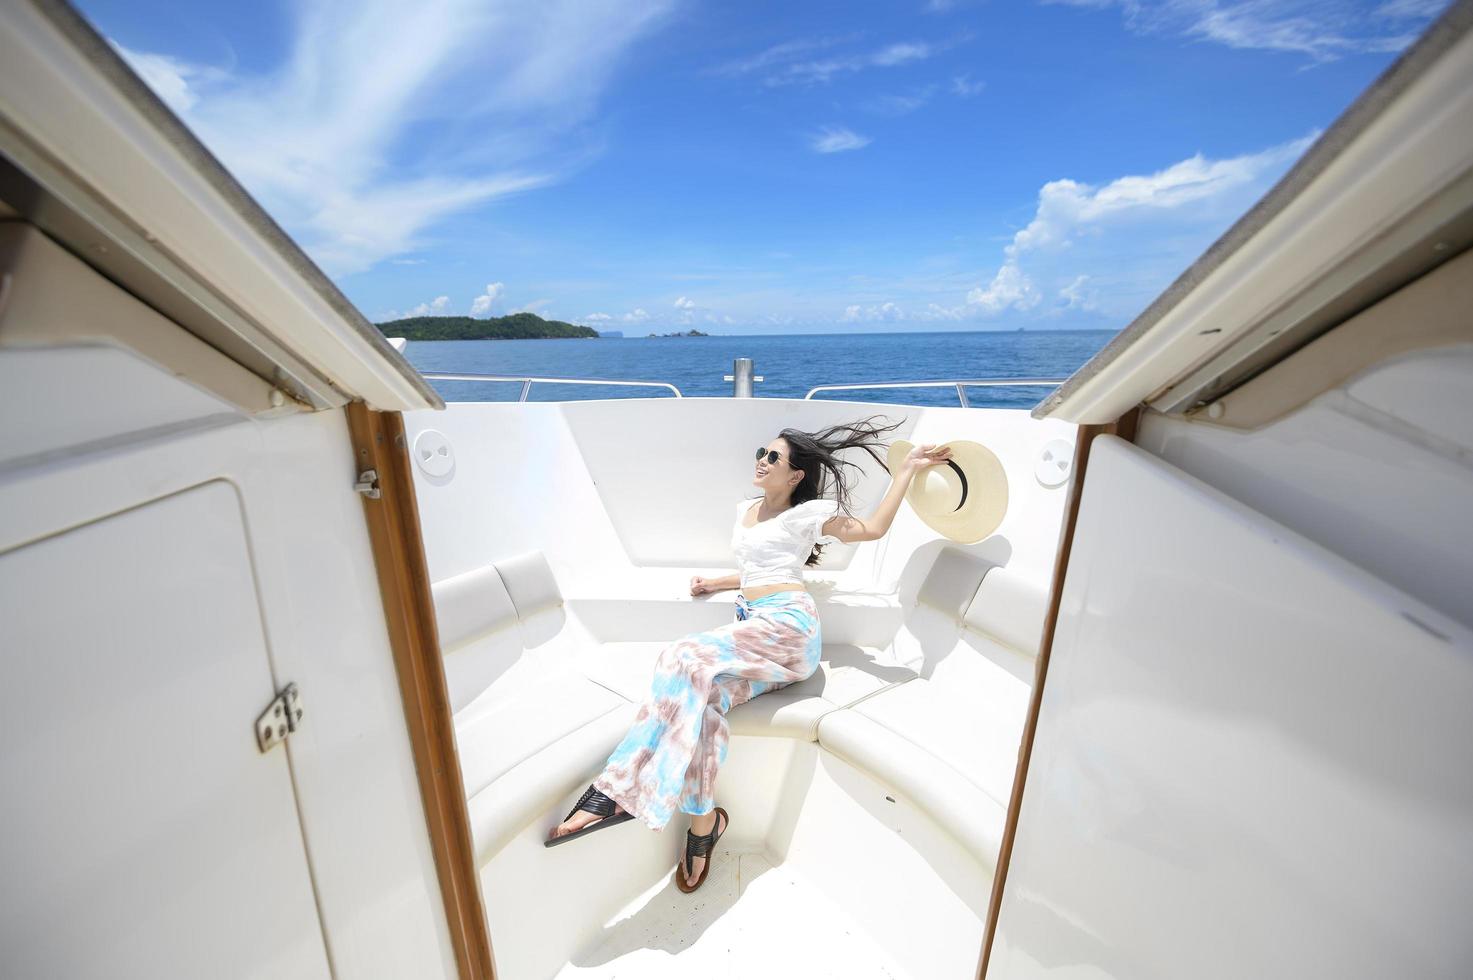 turista emocionado disfrutando y relajándose en lancha rápida con una hermosa vista del océano y la montaña en el fondo foto